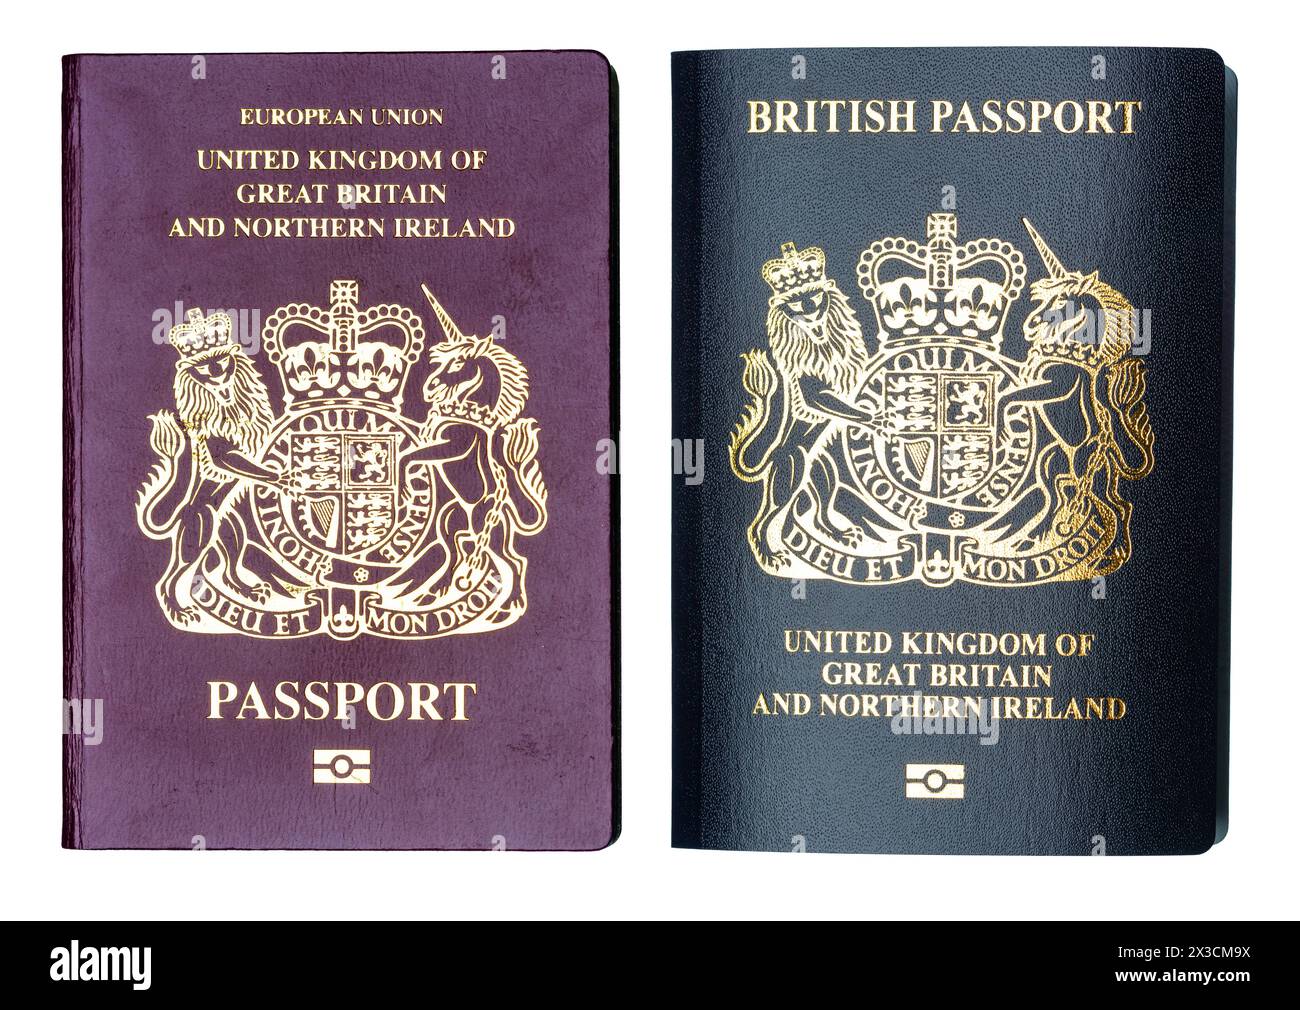 Ein alter burgunderroter britischer Pass neben einem neuen Blauen britischen Pass Stockfoto